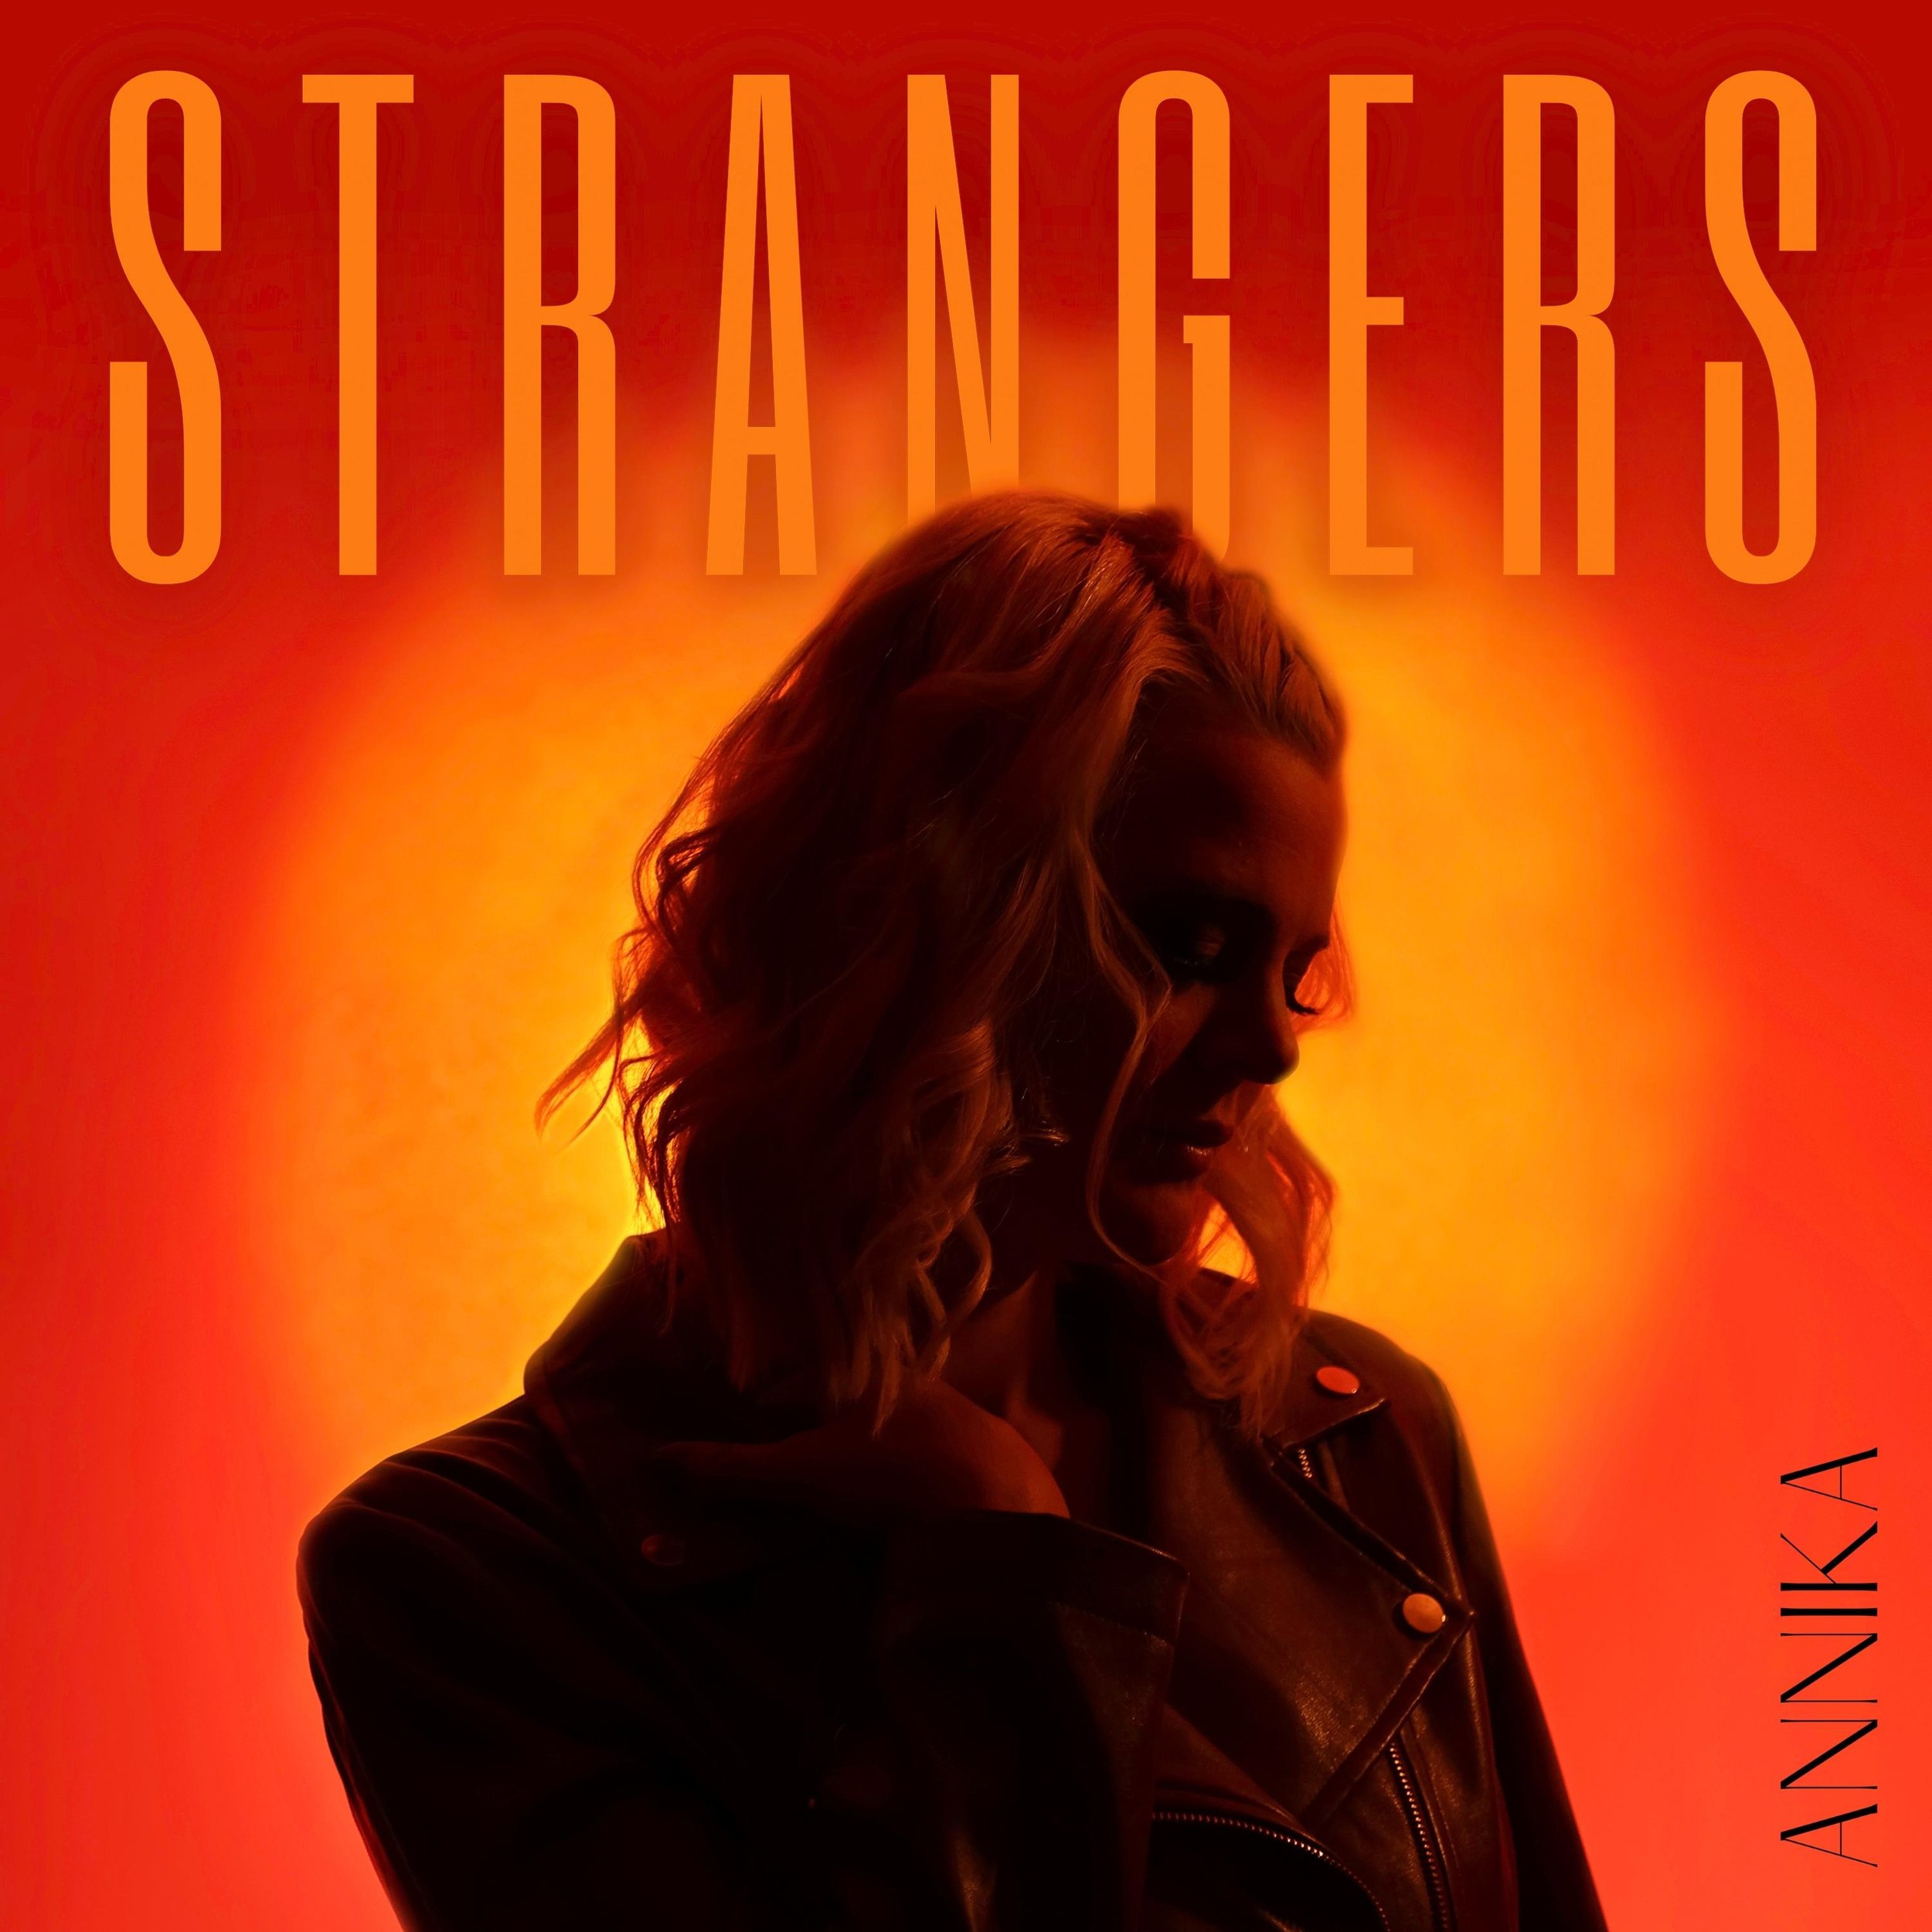 Strangers Cover Art - FINAL.jpg